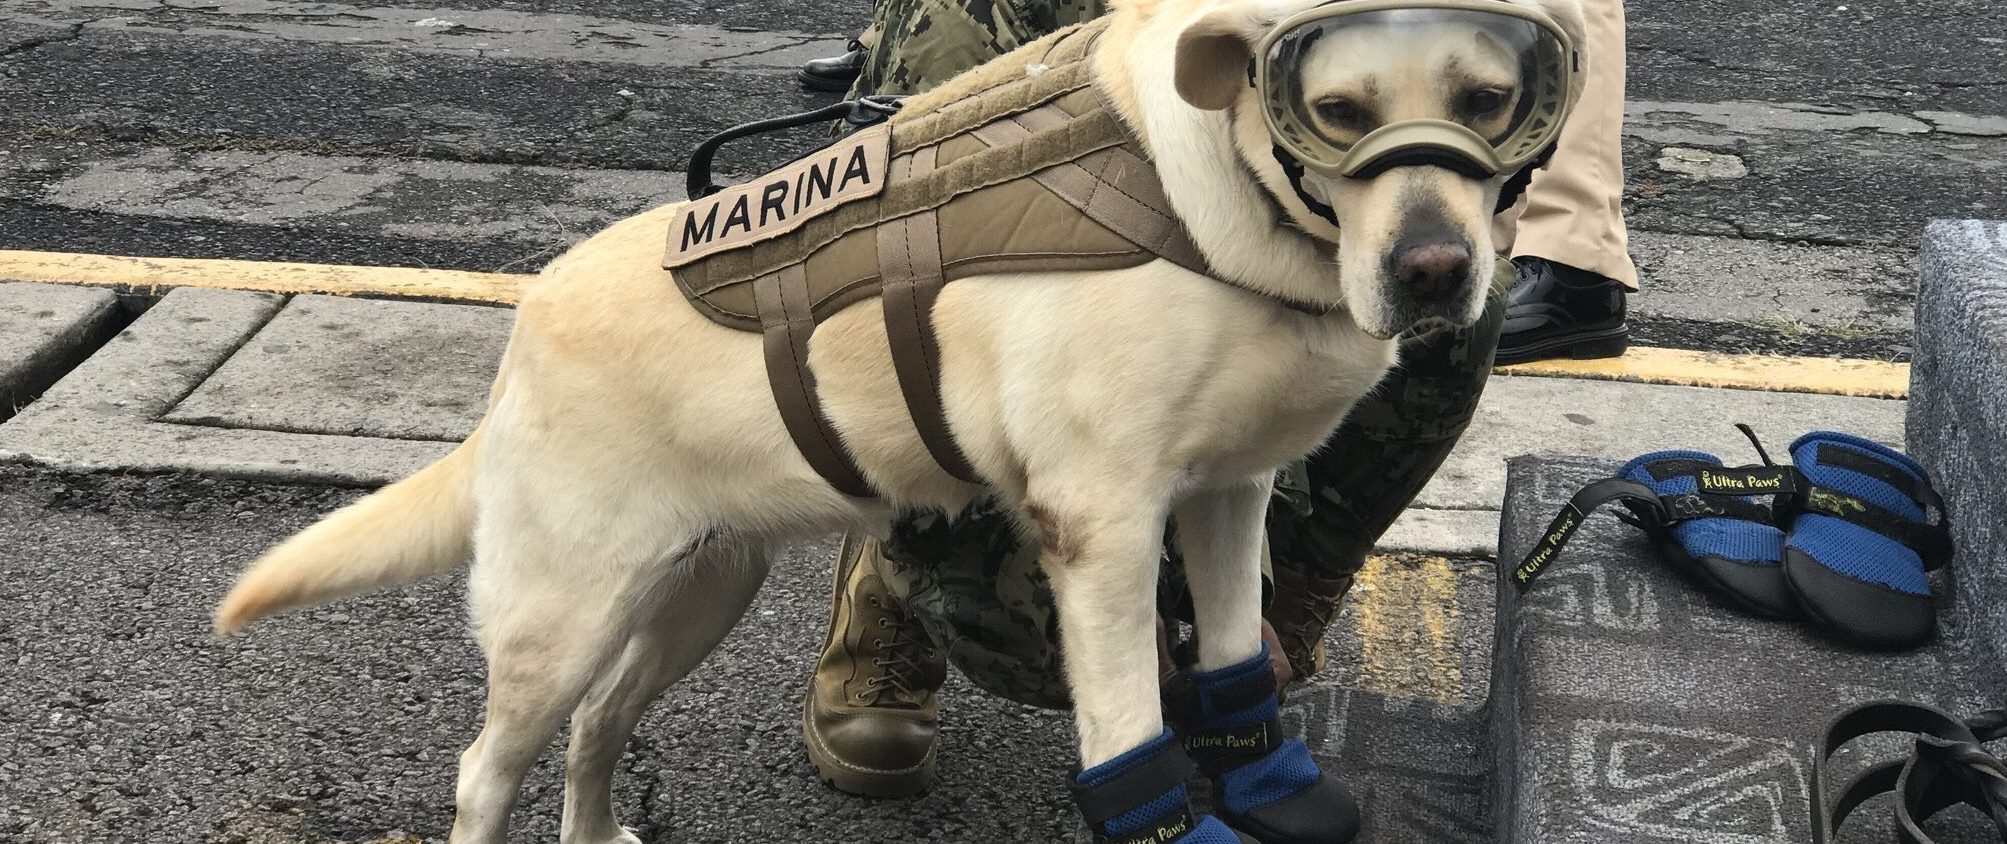 Polizeihund Frida rettet Verschüttete in Mexiko